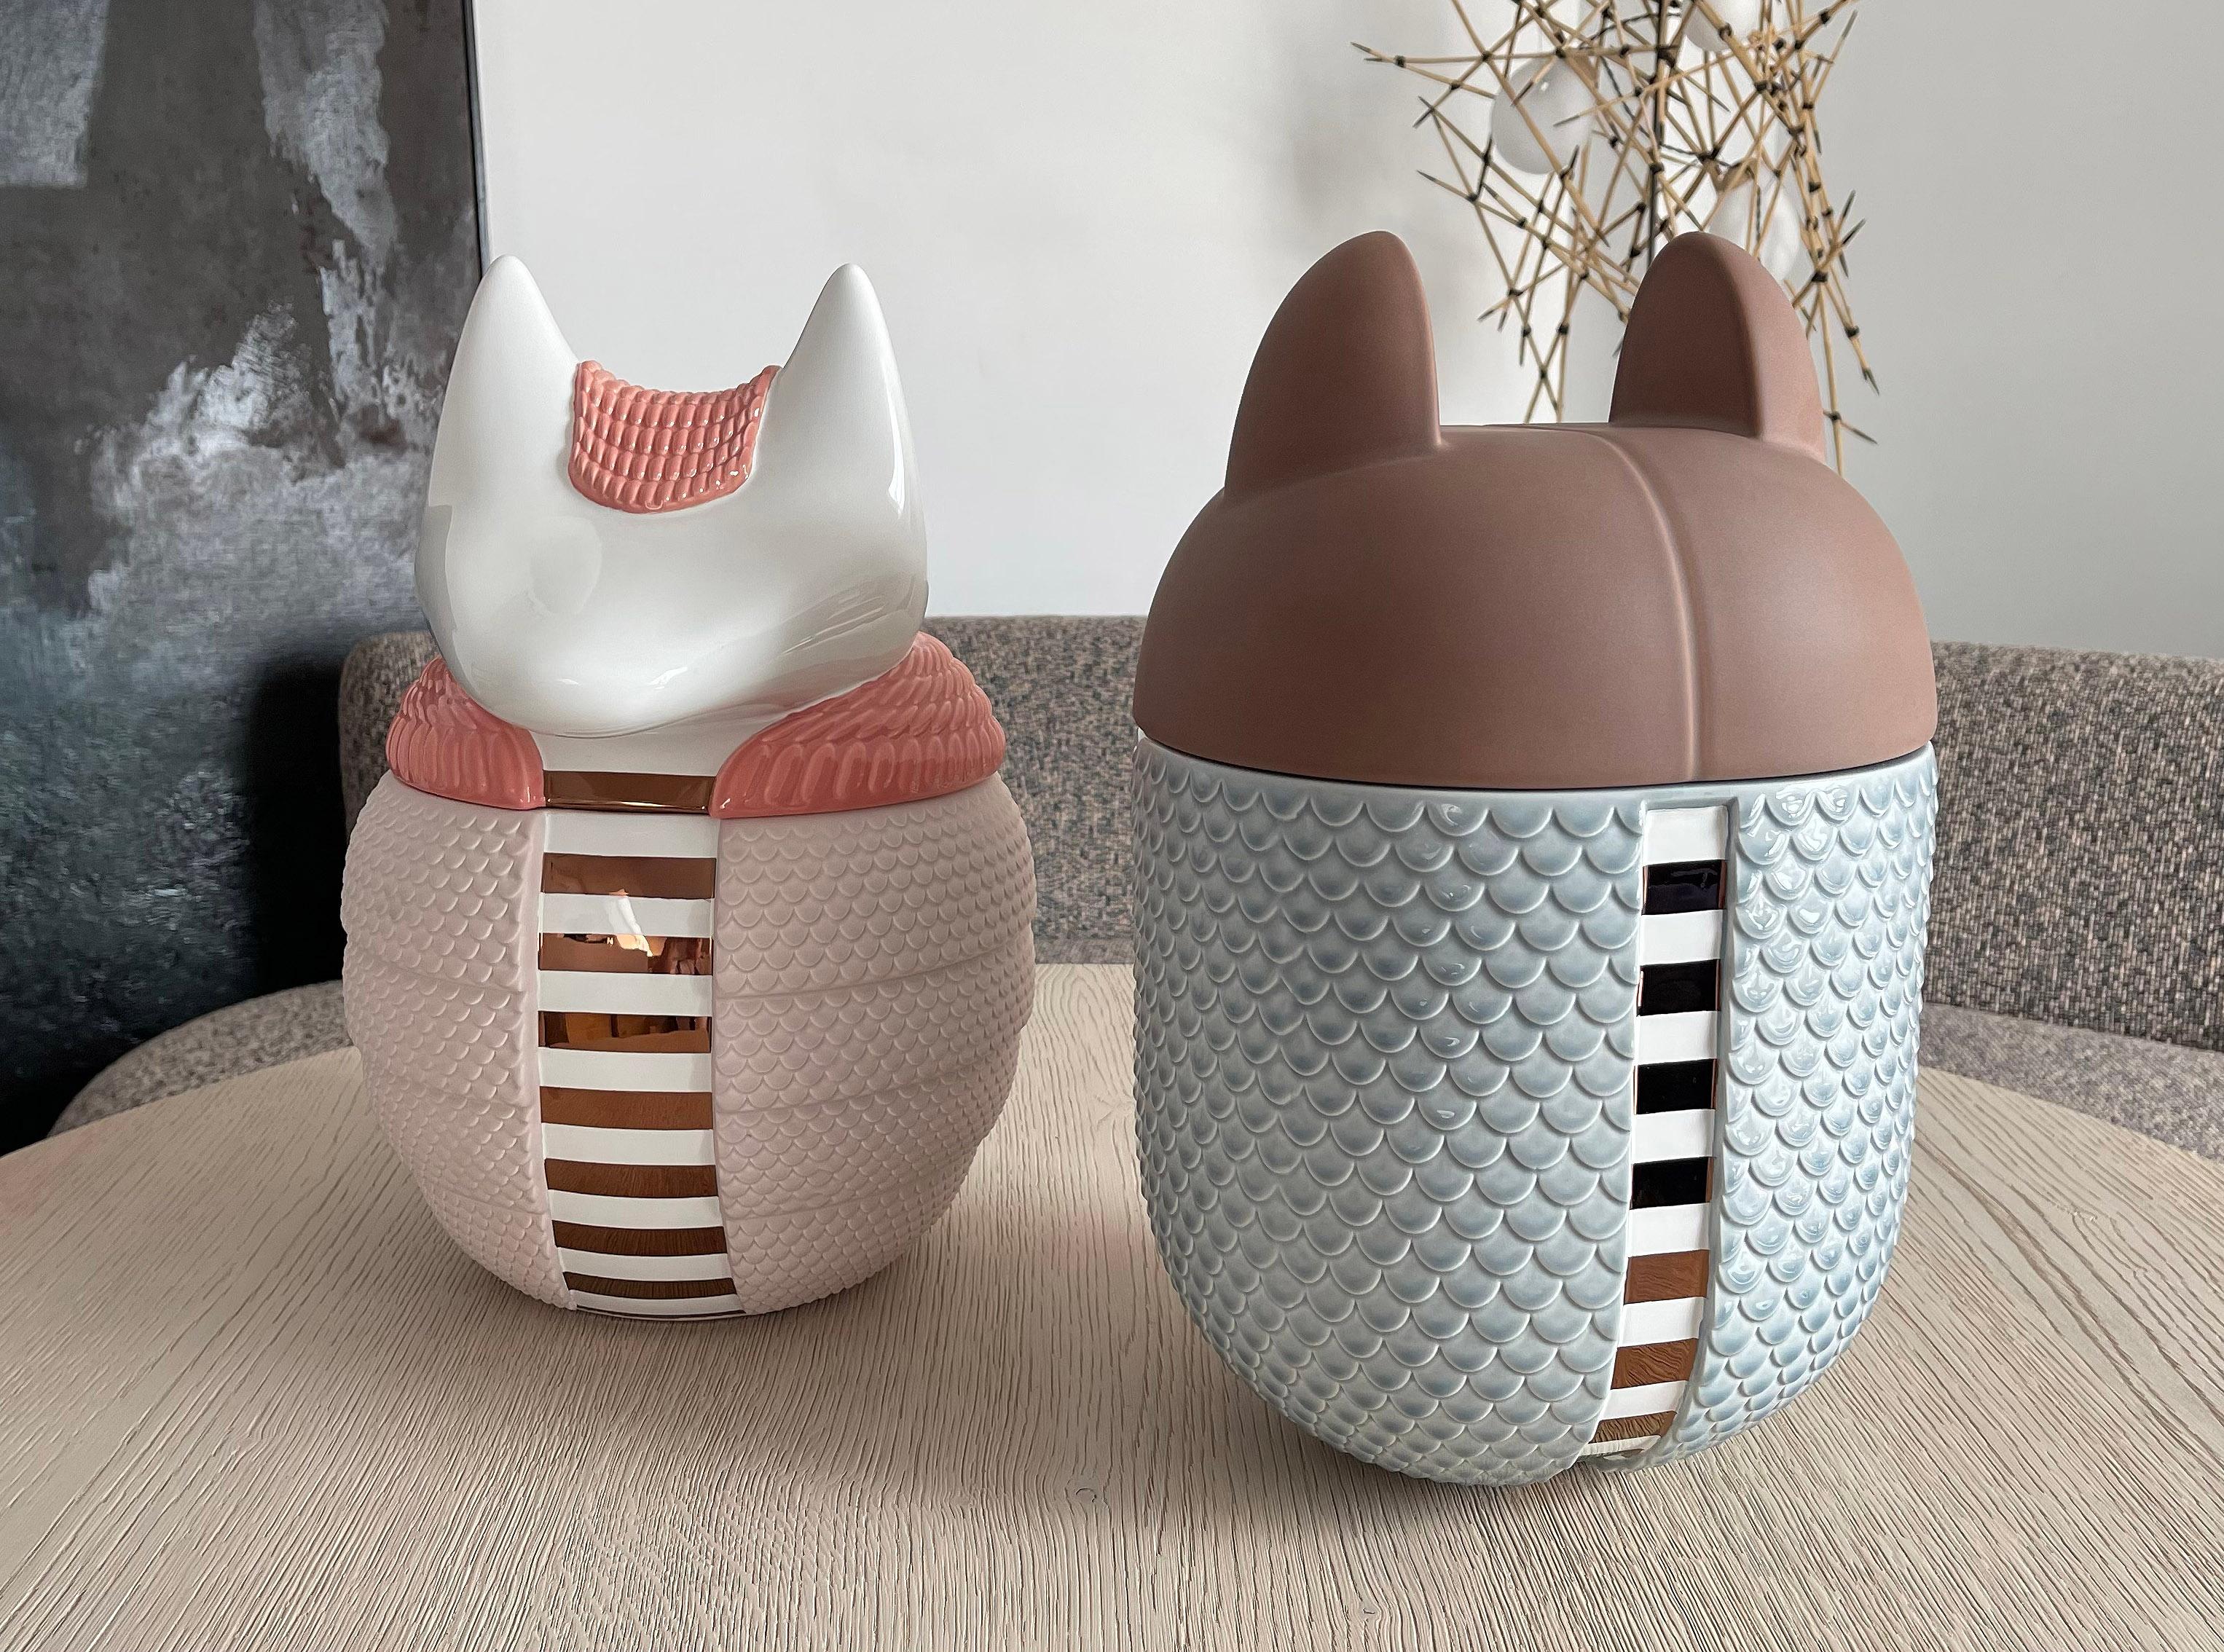 2er-Set Keramikvasen / -gefäße - Animalità Khepri und Loricato von Elena Salmistraro für Bosa

Khepri und Loricato, entworfen von Elena Salmistraro für Bosa, sind gürteltierförmige Behälter/Vasen aus mit Edelmetallen angereicherter Keramik, deren